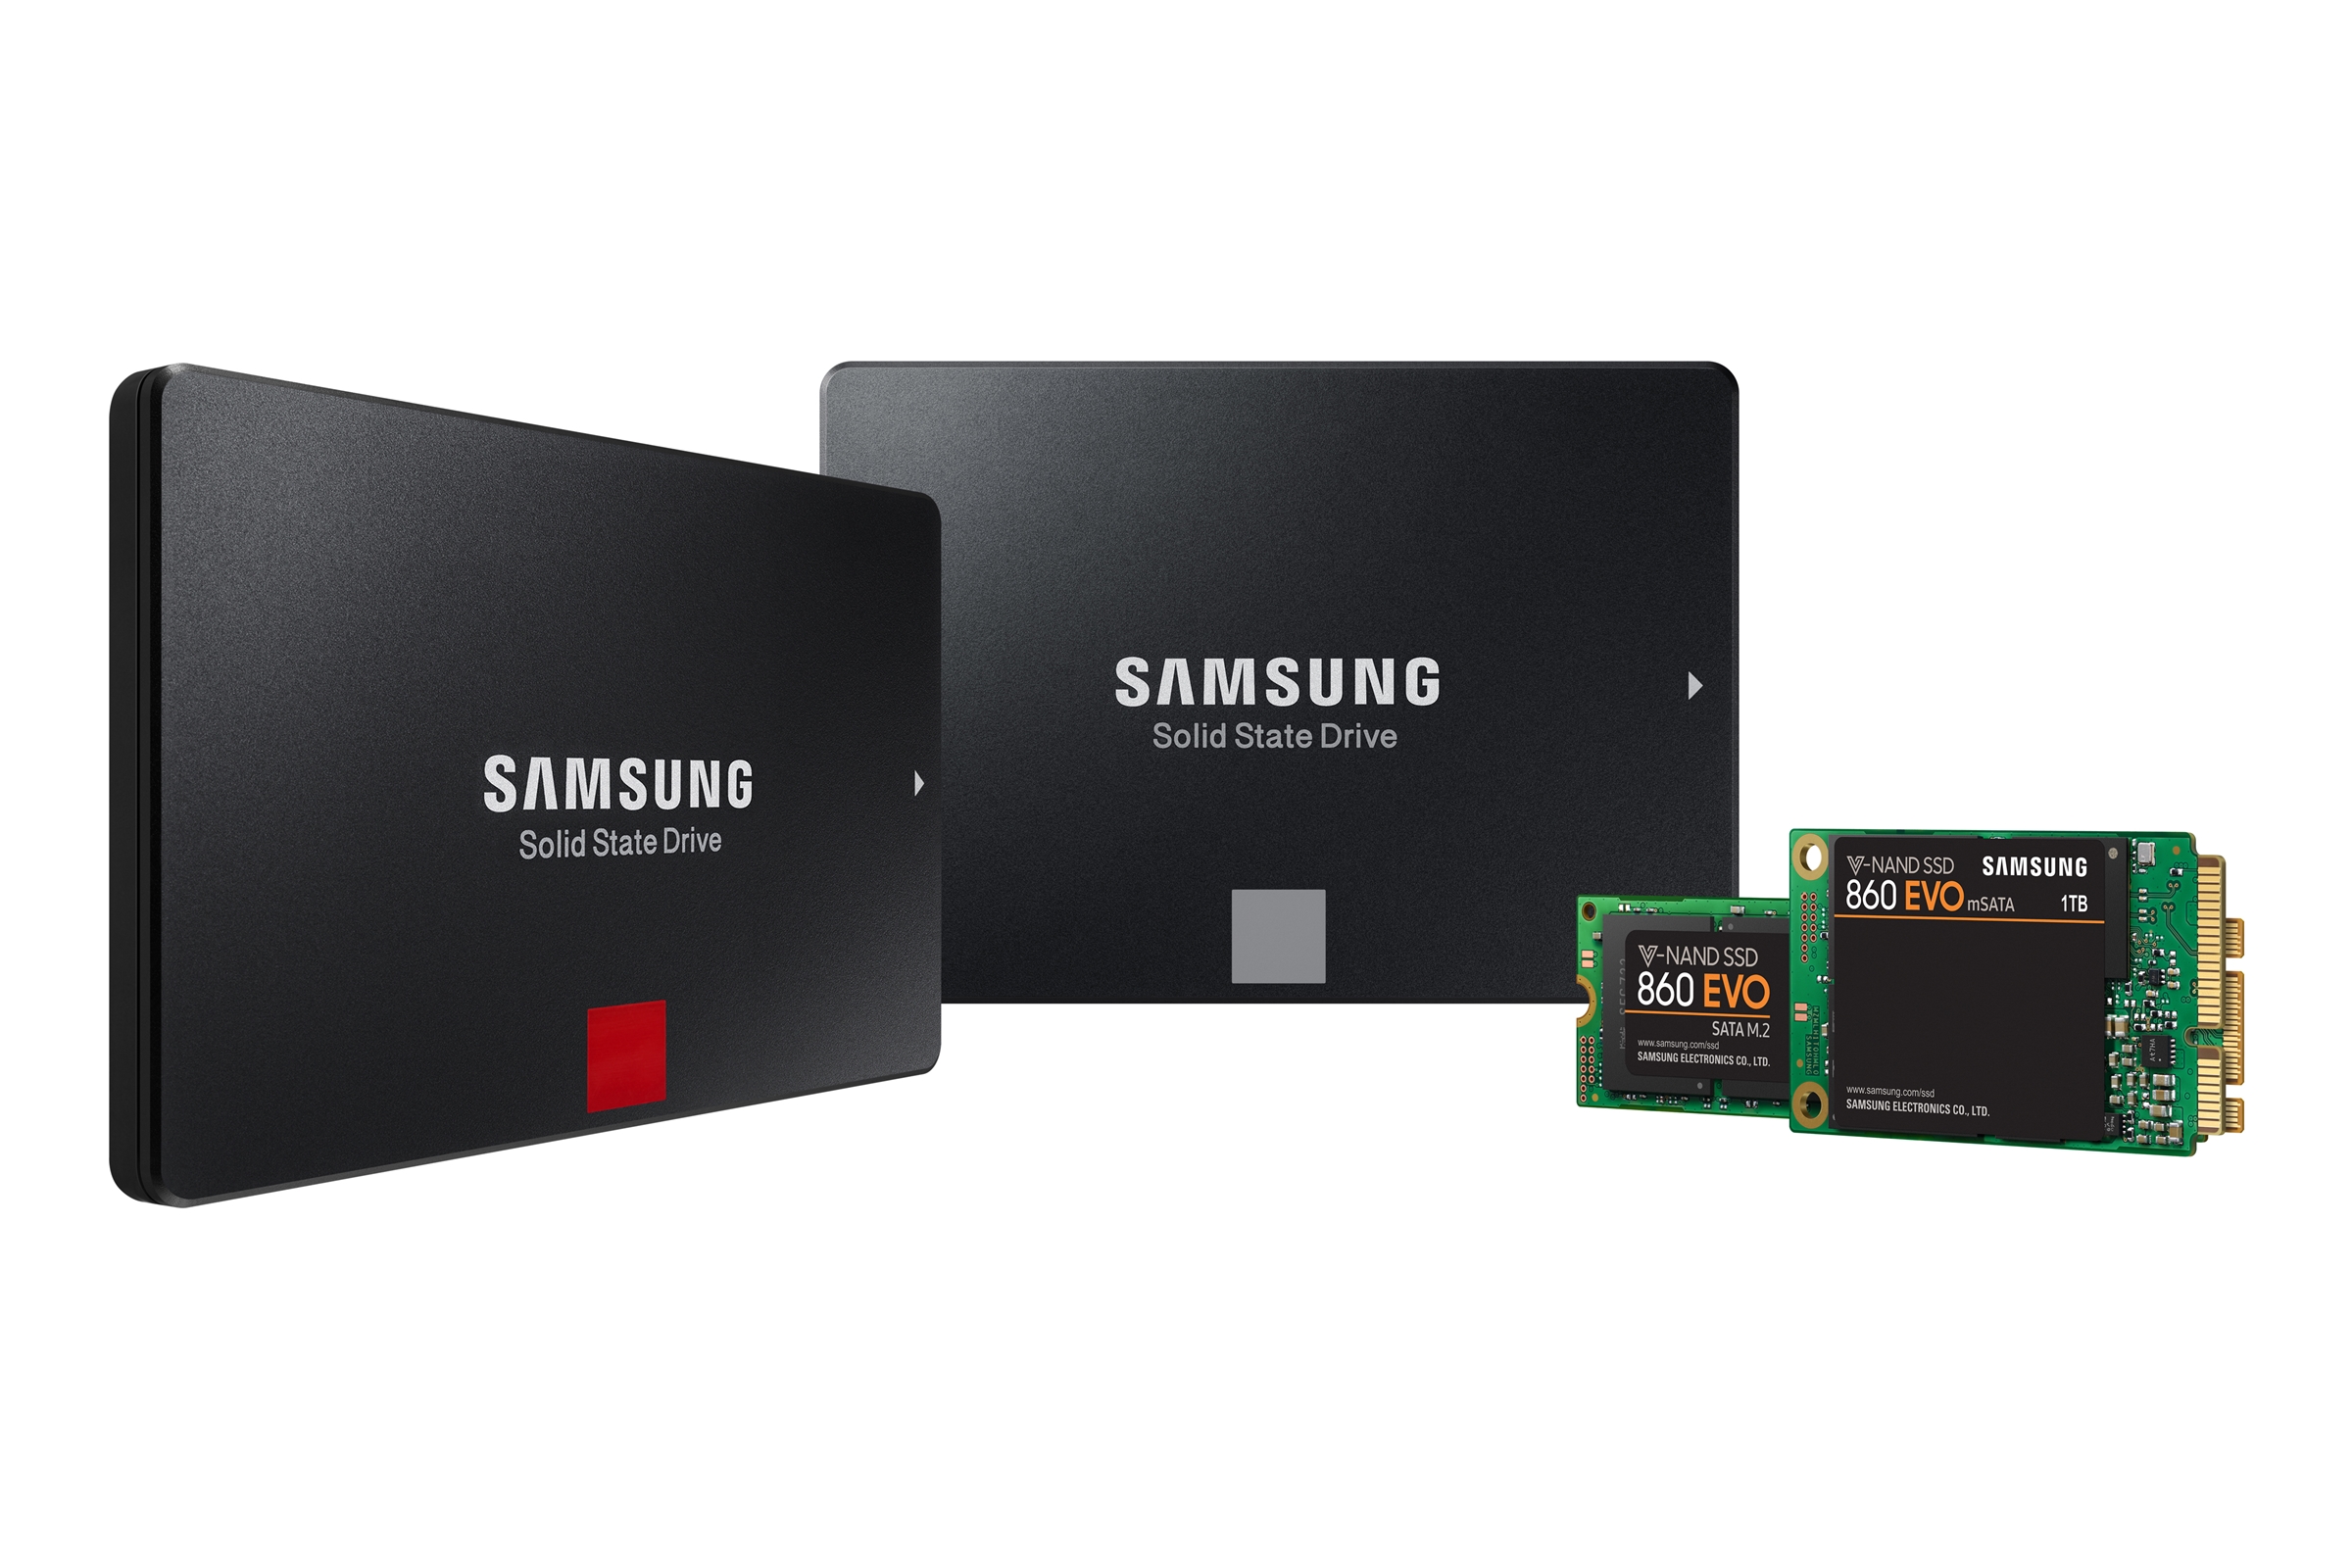 Immagine pubblicata in relazione al seguente contenuto: Samsung lancia ufficialmente le linee di drive SSD 860 Pro e 860 EVO | Nome immagine: news27753_Samsung-860-Pro-860-EVO_9.jpg